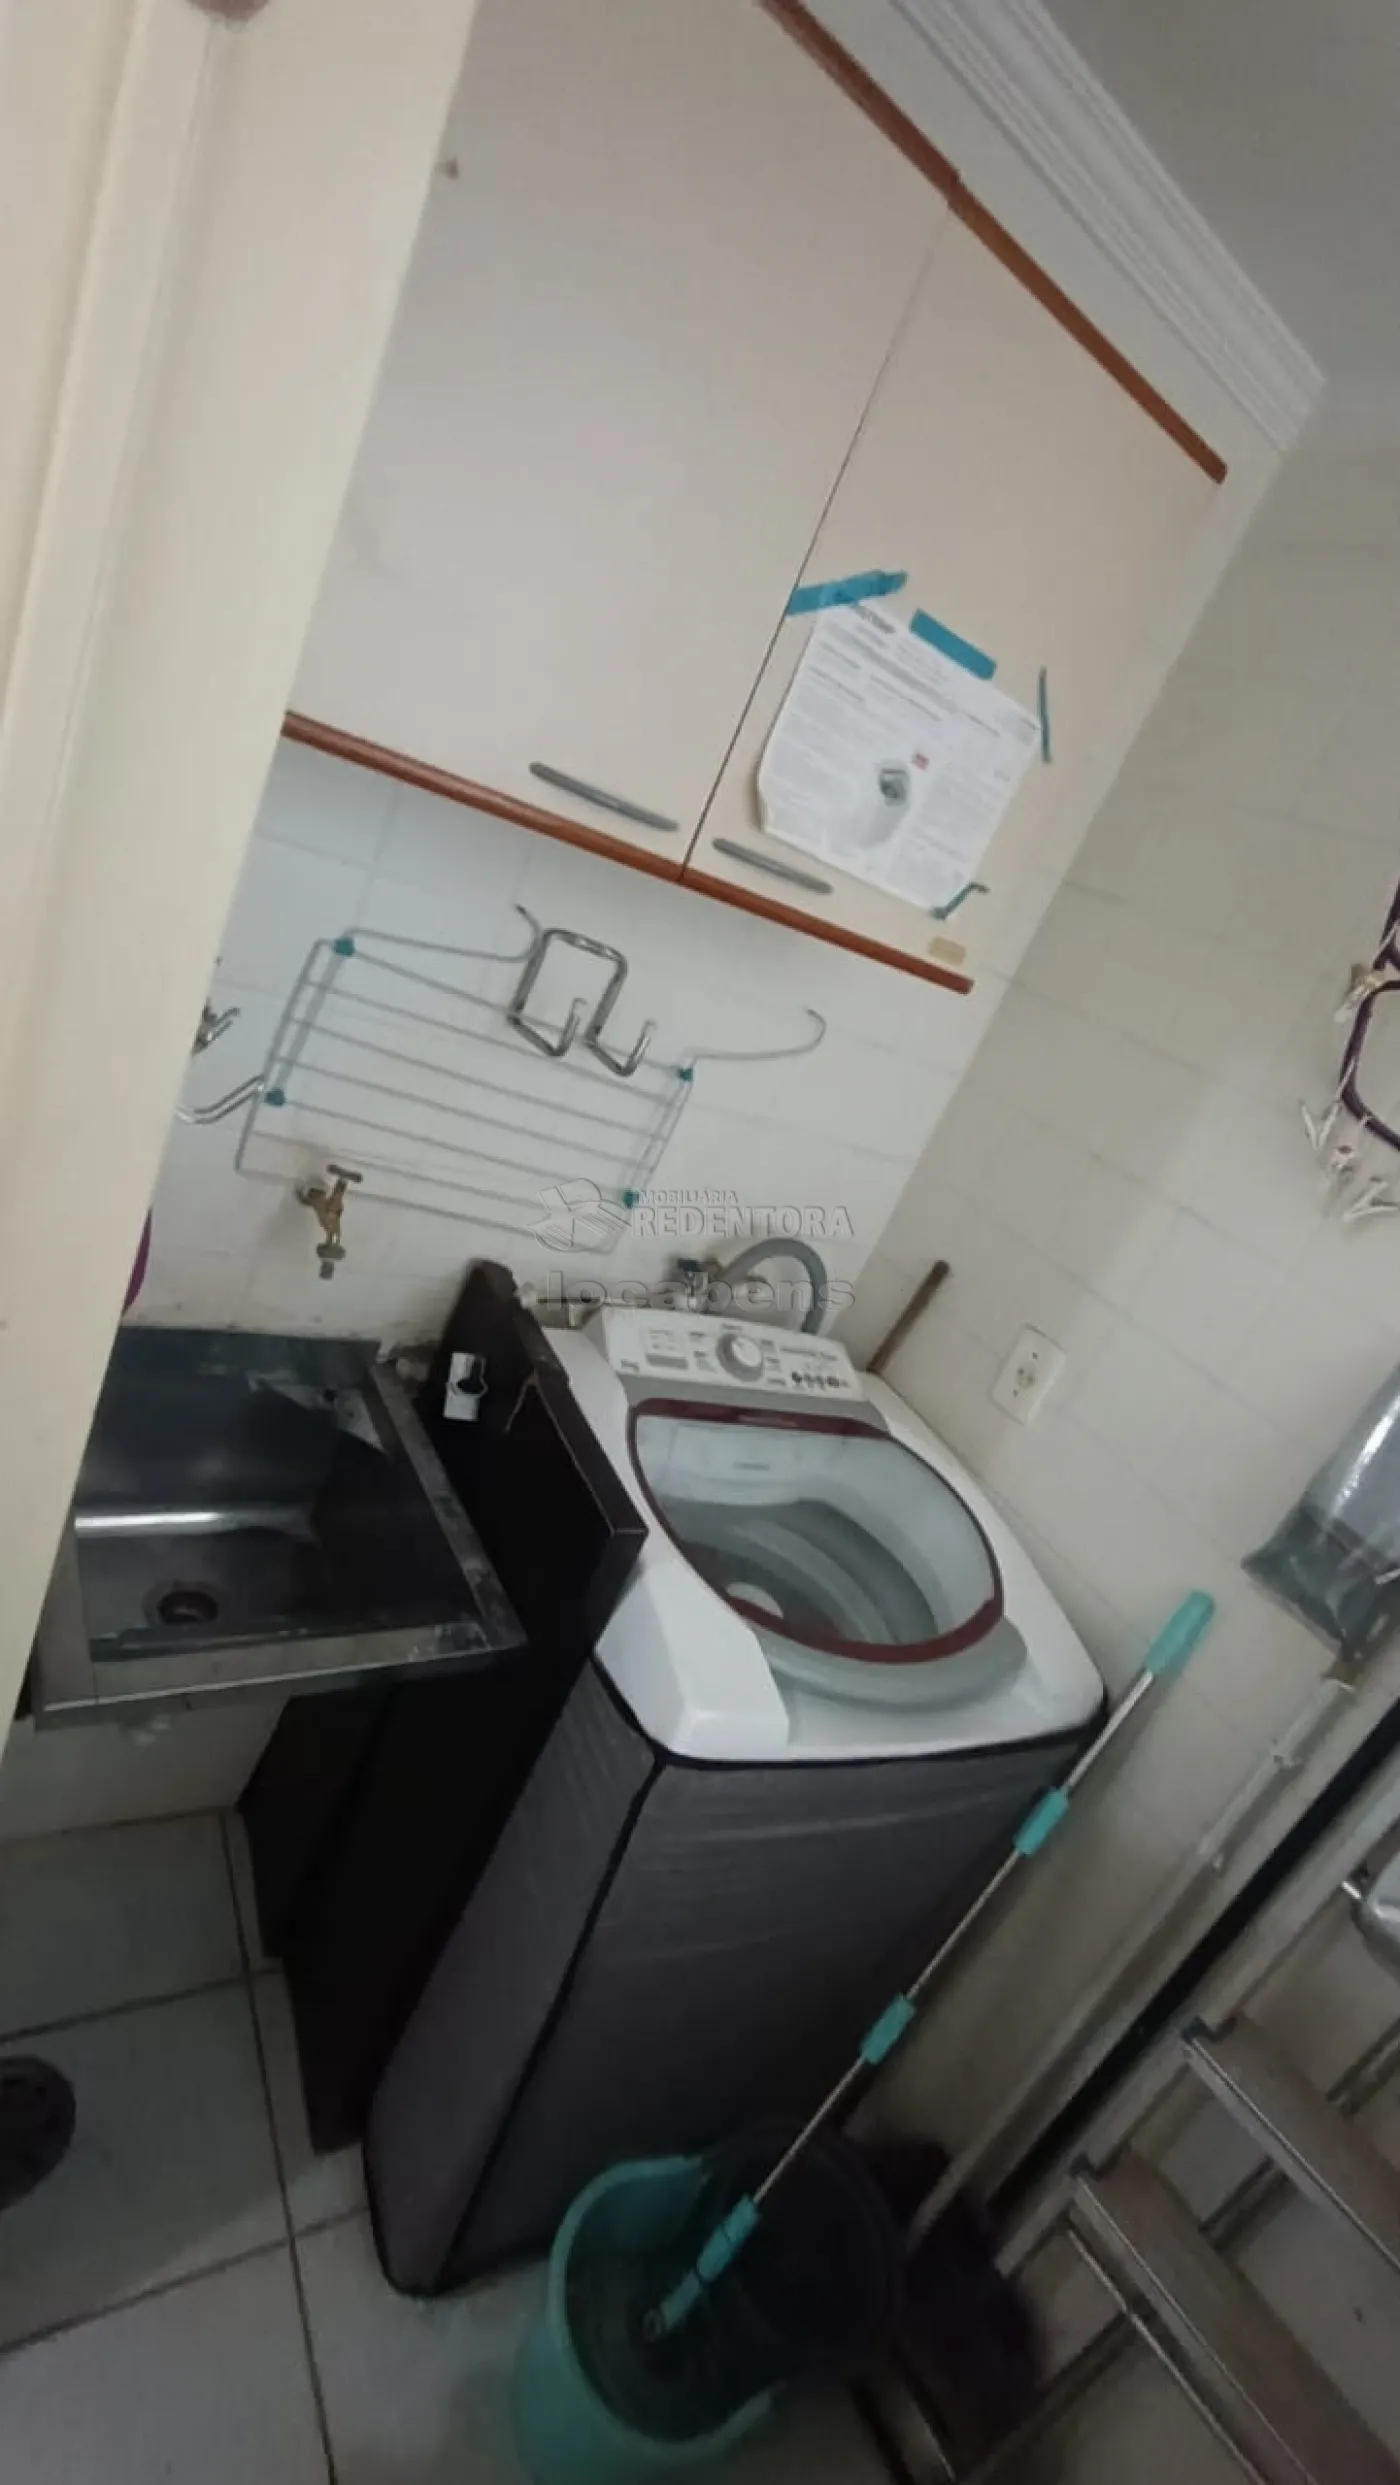 Alugar Apartamento / Padrão em São José do Rio Preto R$ 850,00 - Foto 4